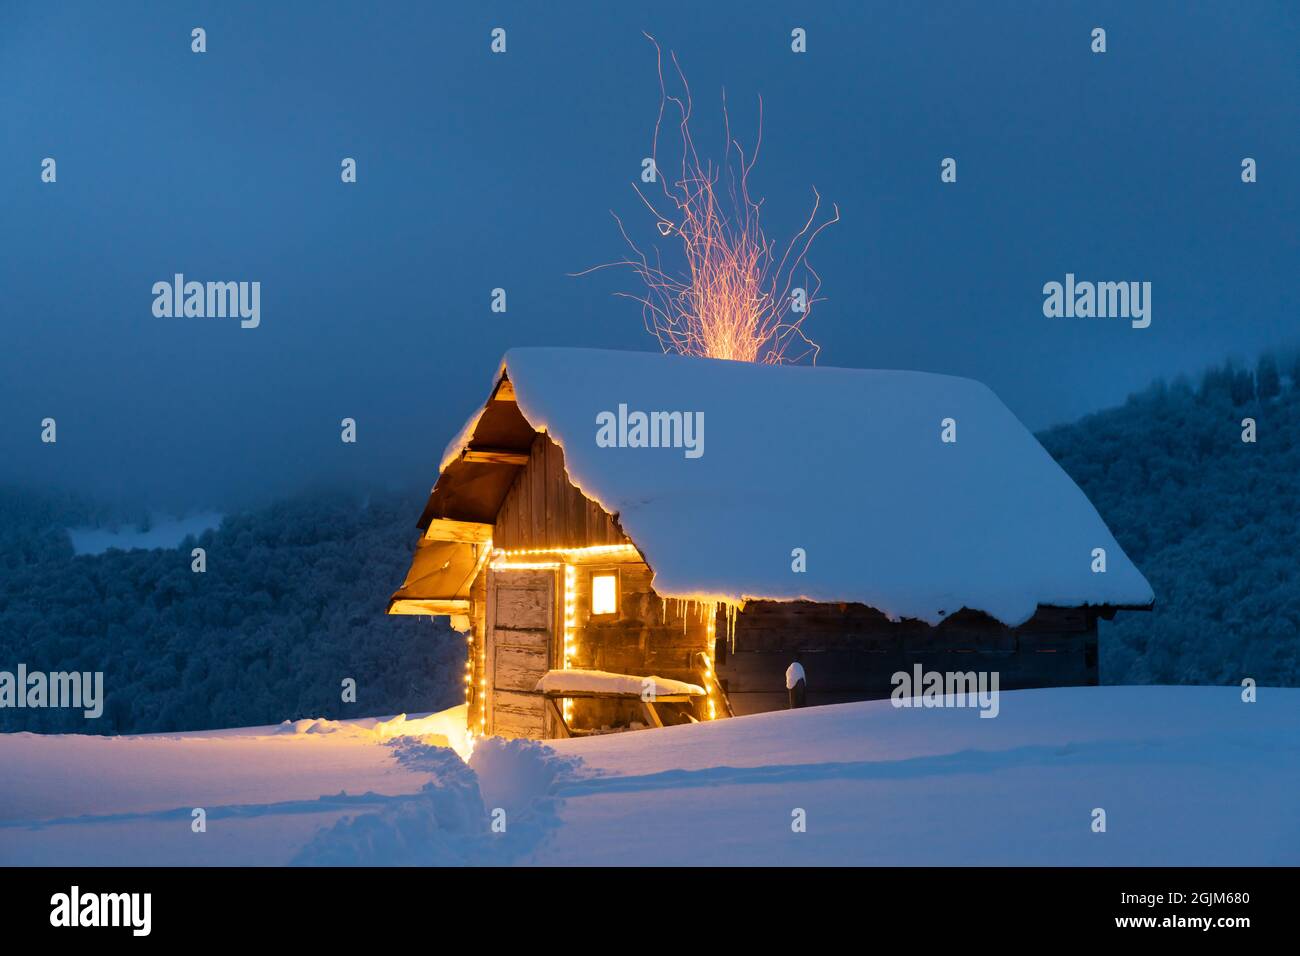 Fantastico paesaggio invernale con luminosa cabina in legno nella foresta innevata. Le scintille di fuoco volano fuori dal camino. Concetto di festa di Natale Foto Stock